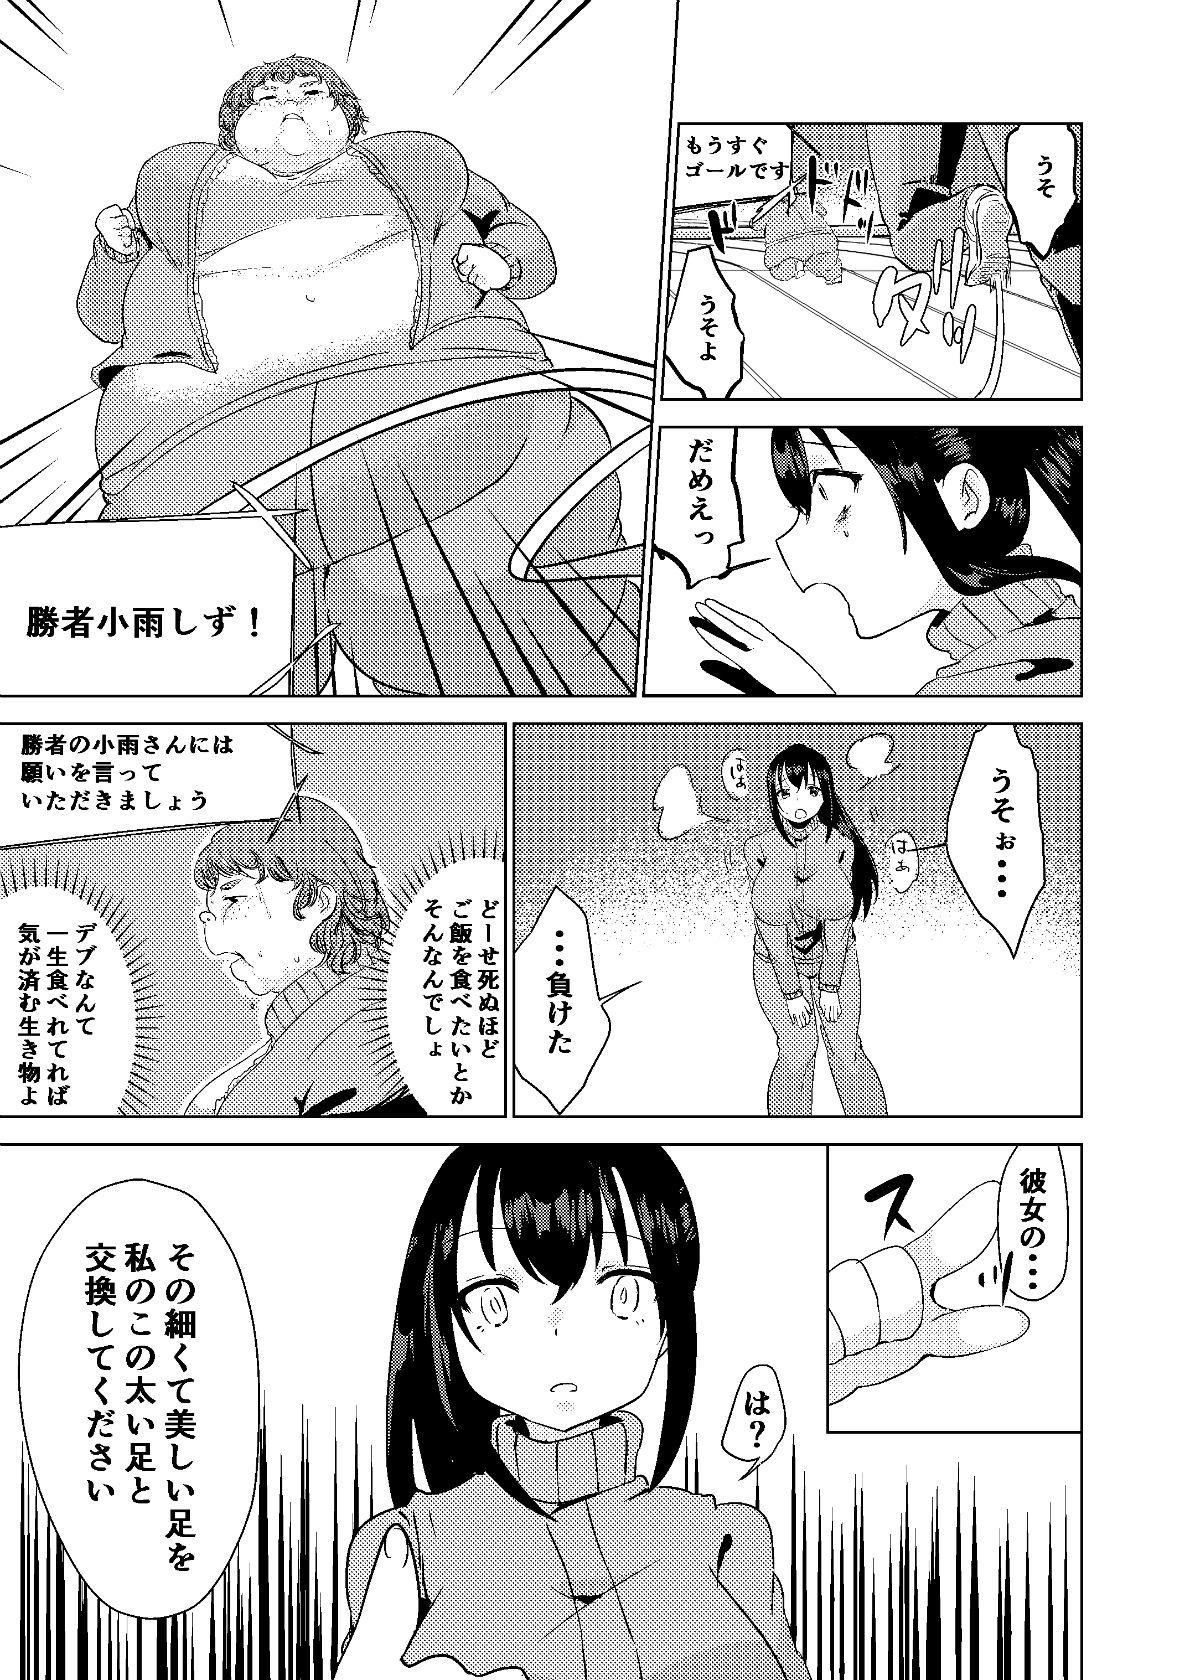 Dick Suckers Kyou kara Watashi wa Anata ni Naru. - Original Calle - Page 11